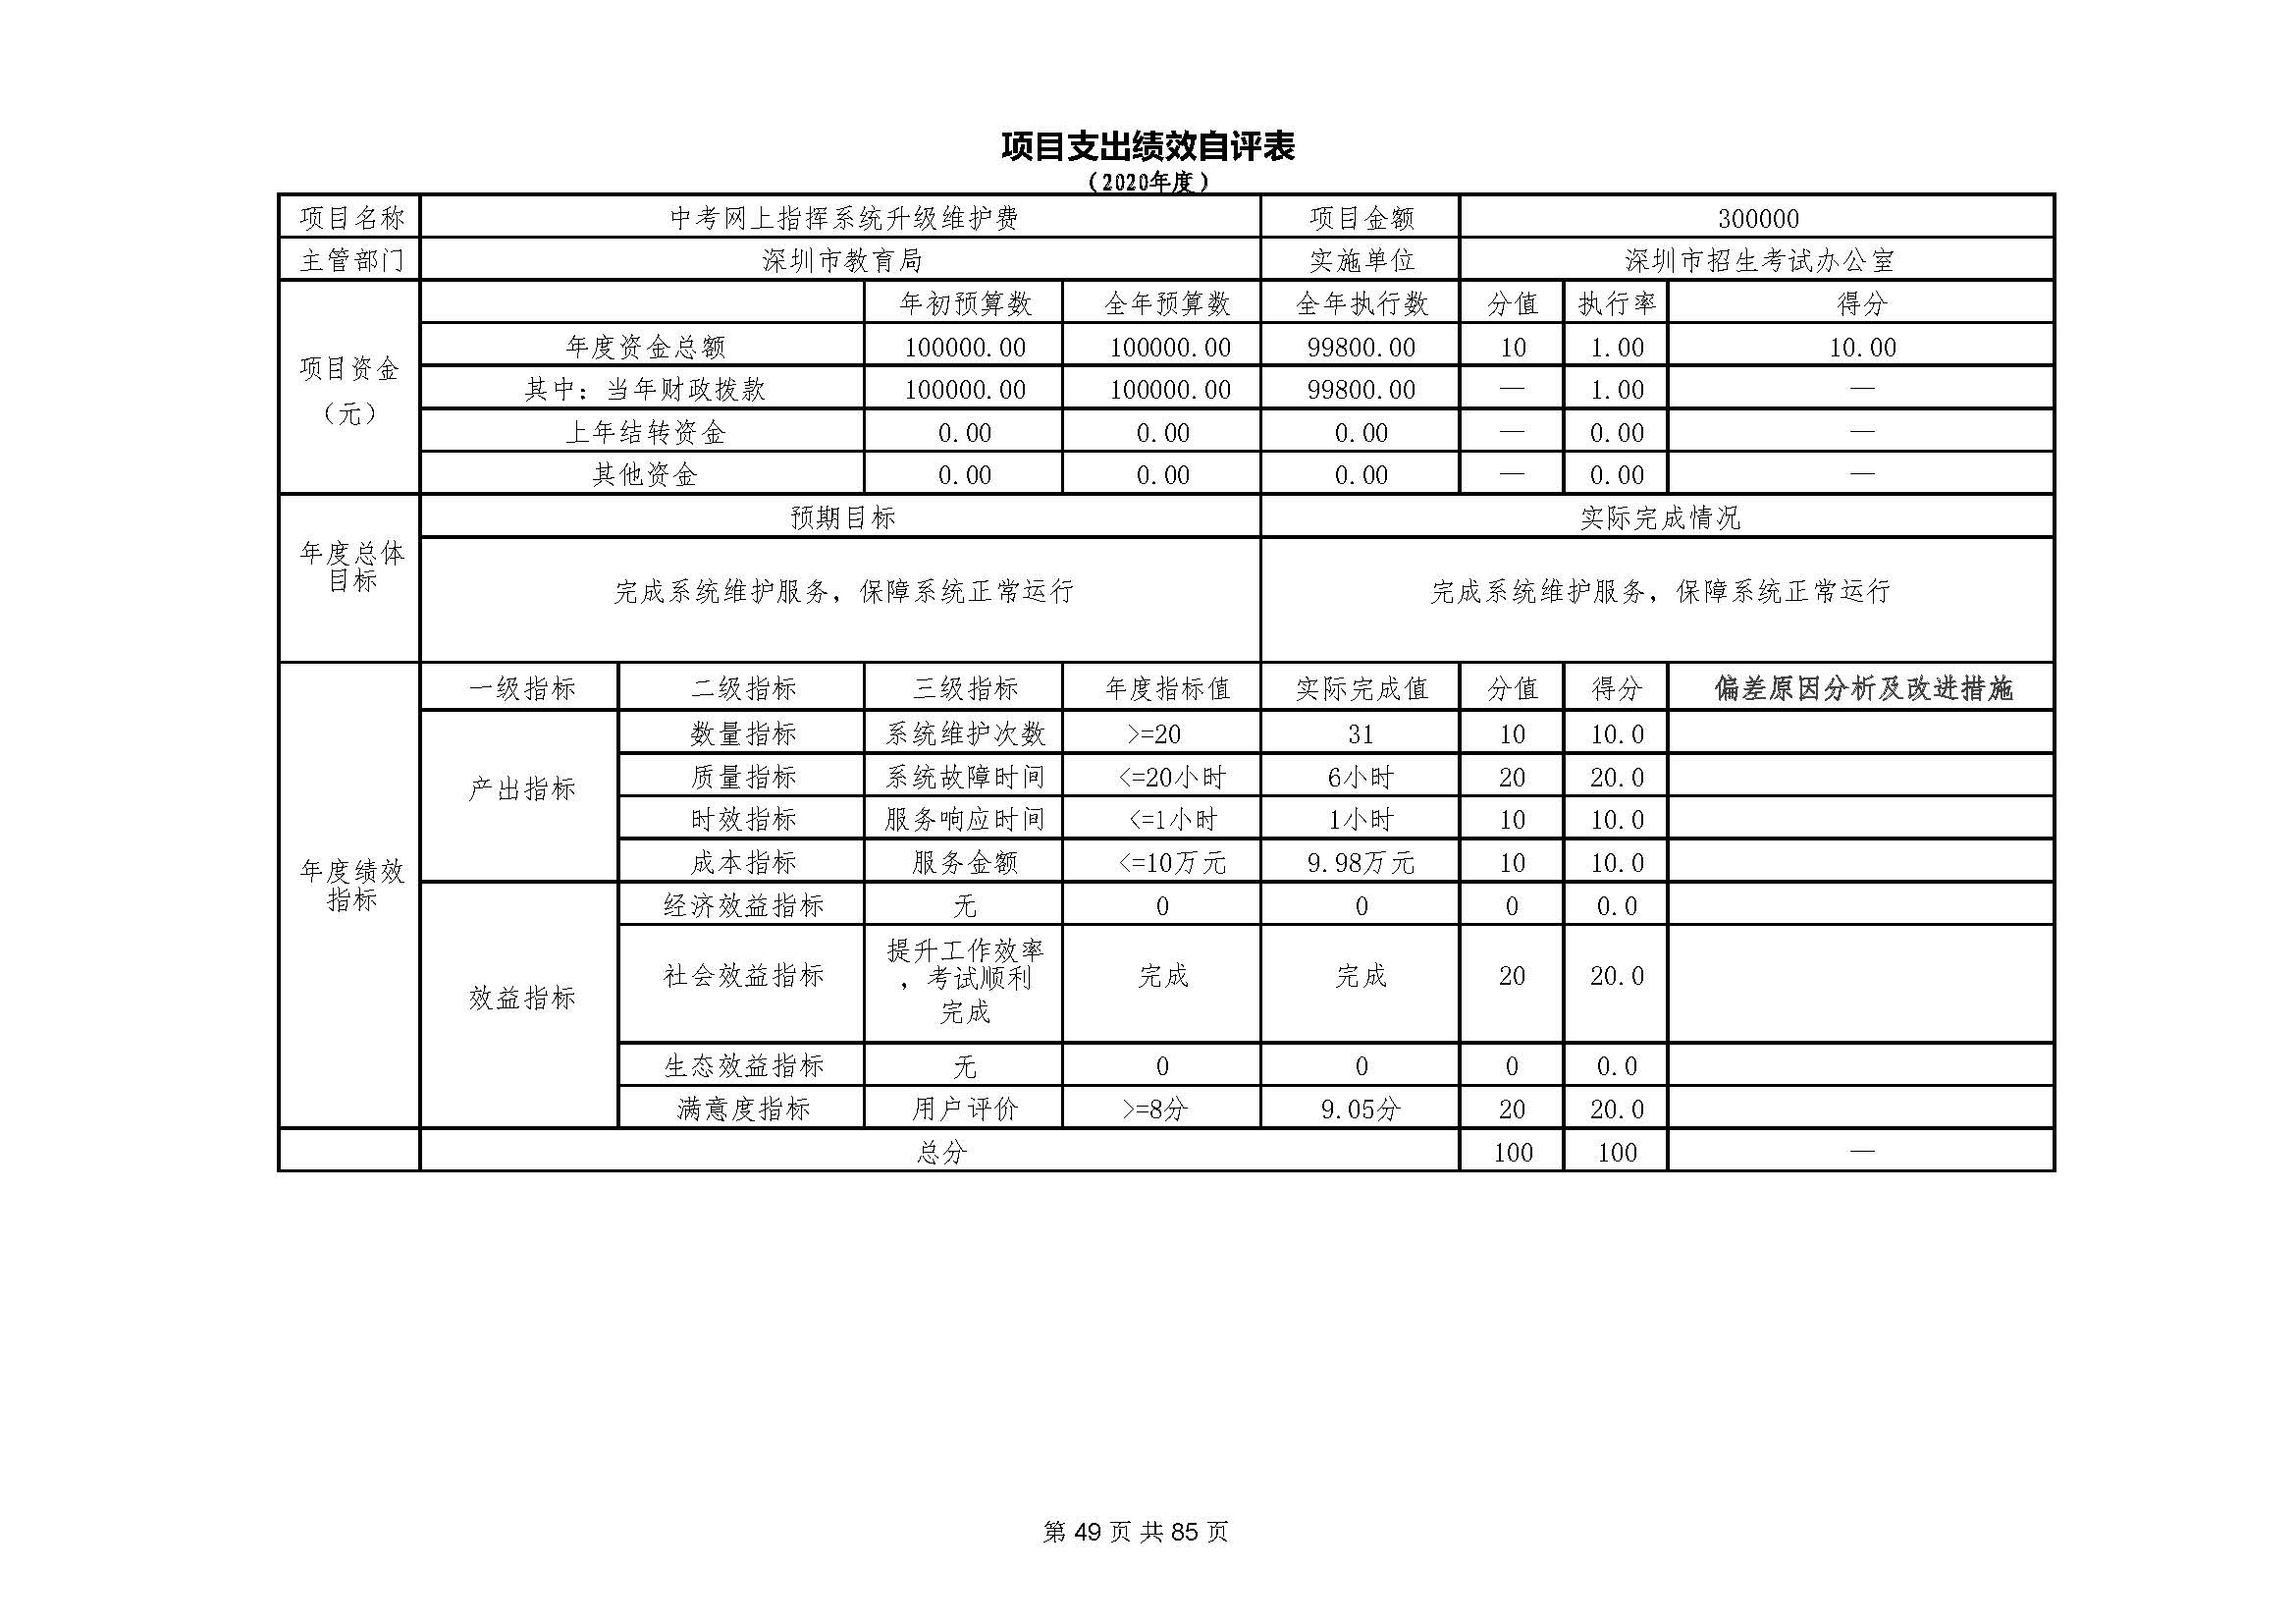 深圳市招生考试办公室2020年度部门决算_页面_50.jpg